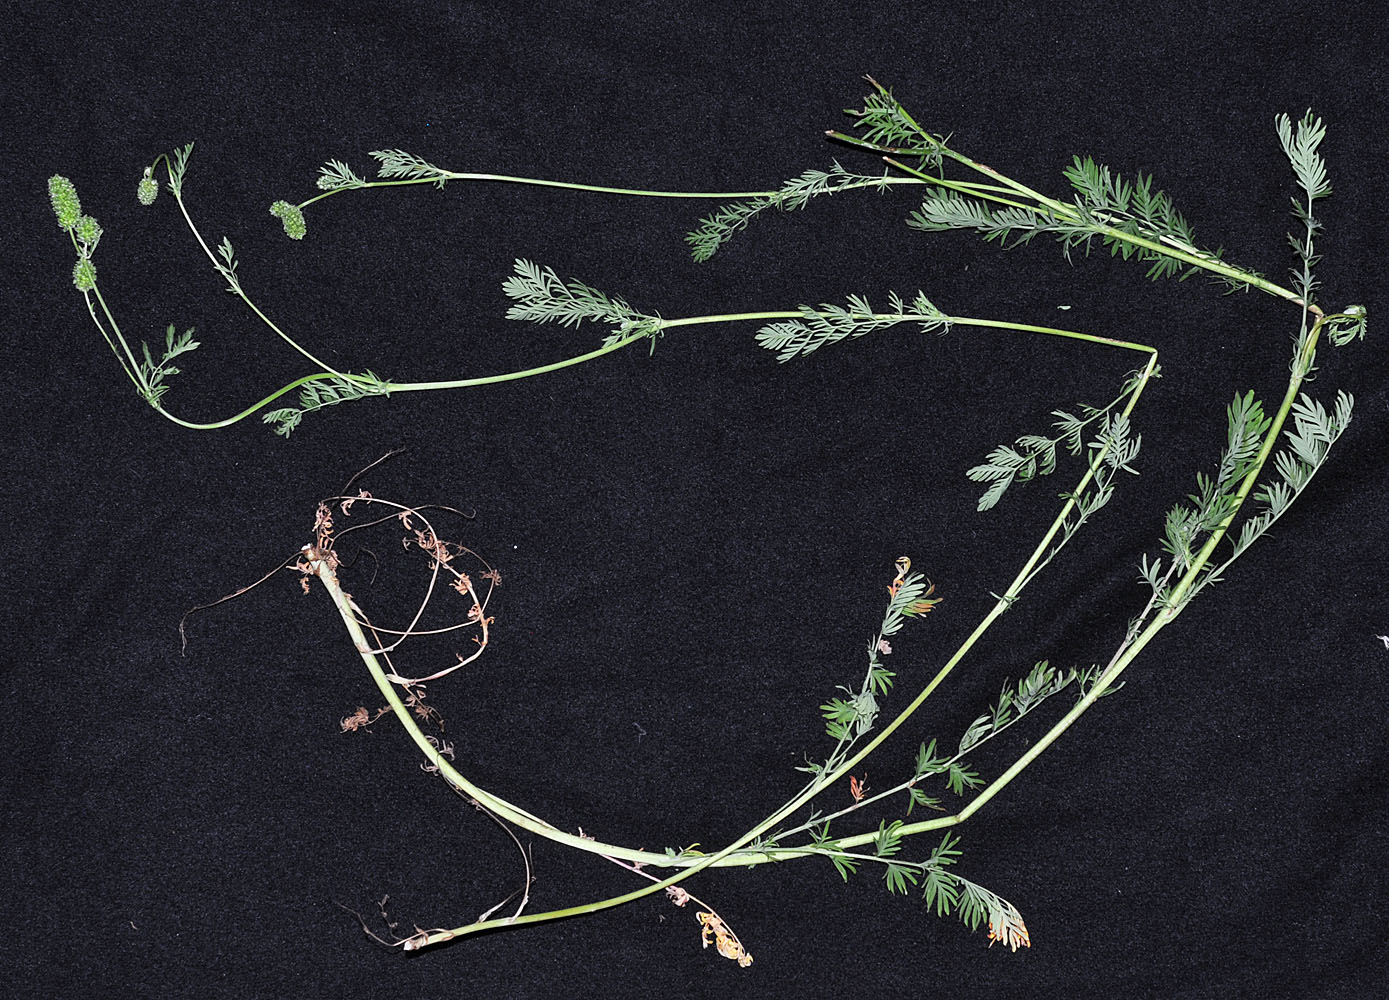 Flora of Eastern Washington Image: Poteridium occidentale